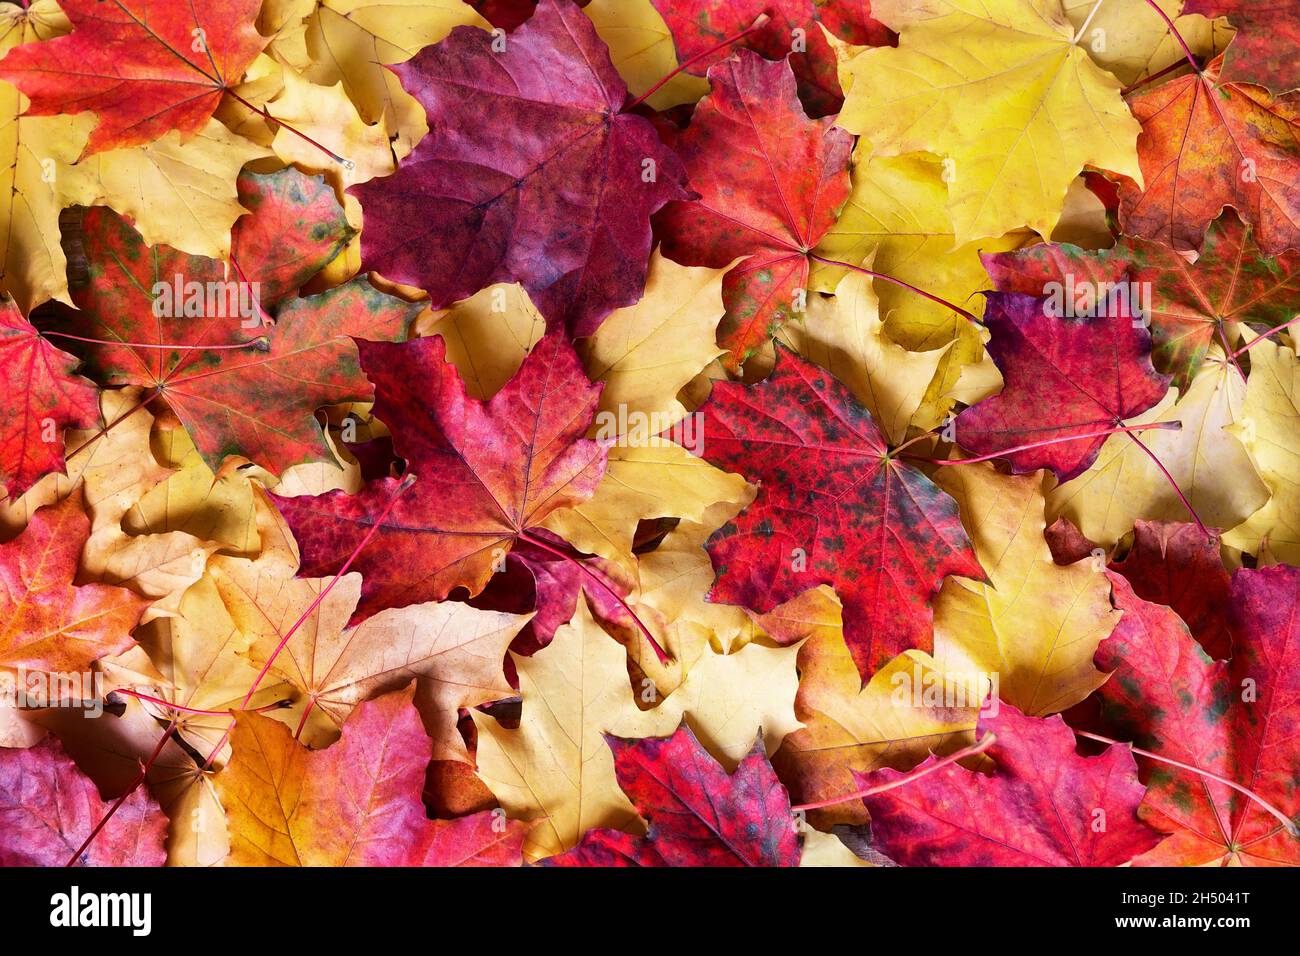 Hintergrund der herbstlichen Blätter. Bunte Herbstblätter, gelbe, orange, braune Blätter auf dem Boden in der Herbstsaison. Stockfoto